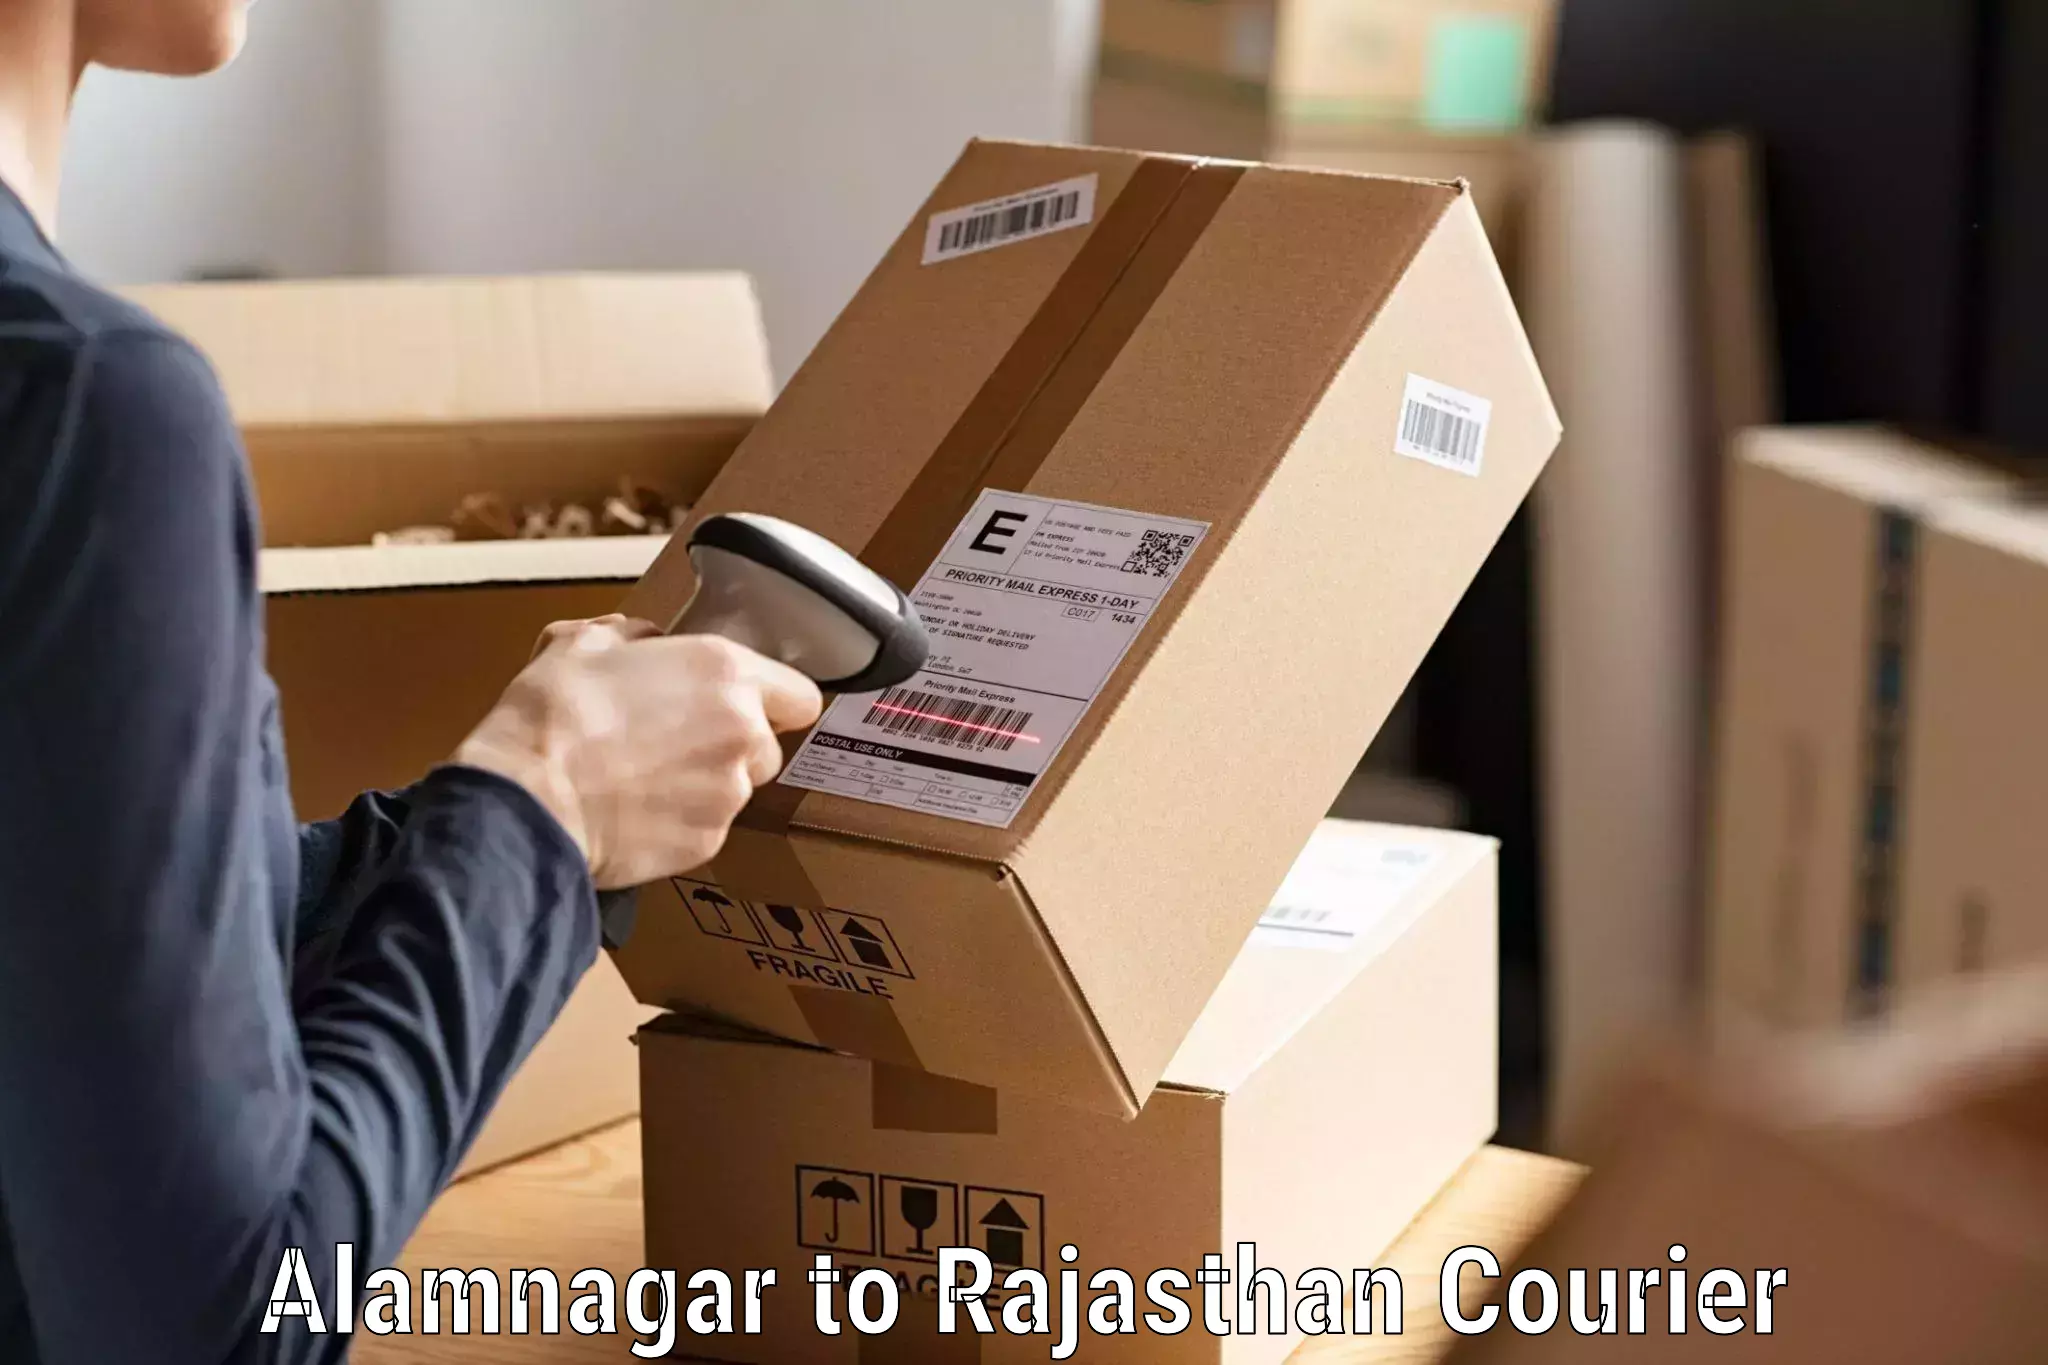 Courier service innovation Alamnagar to Deshnok